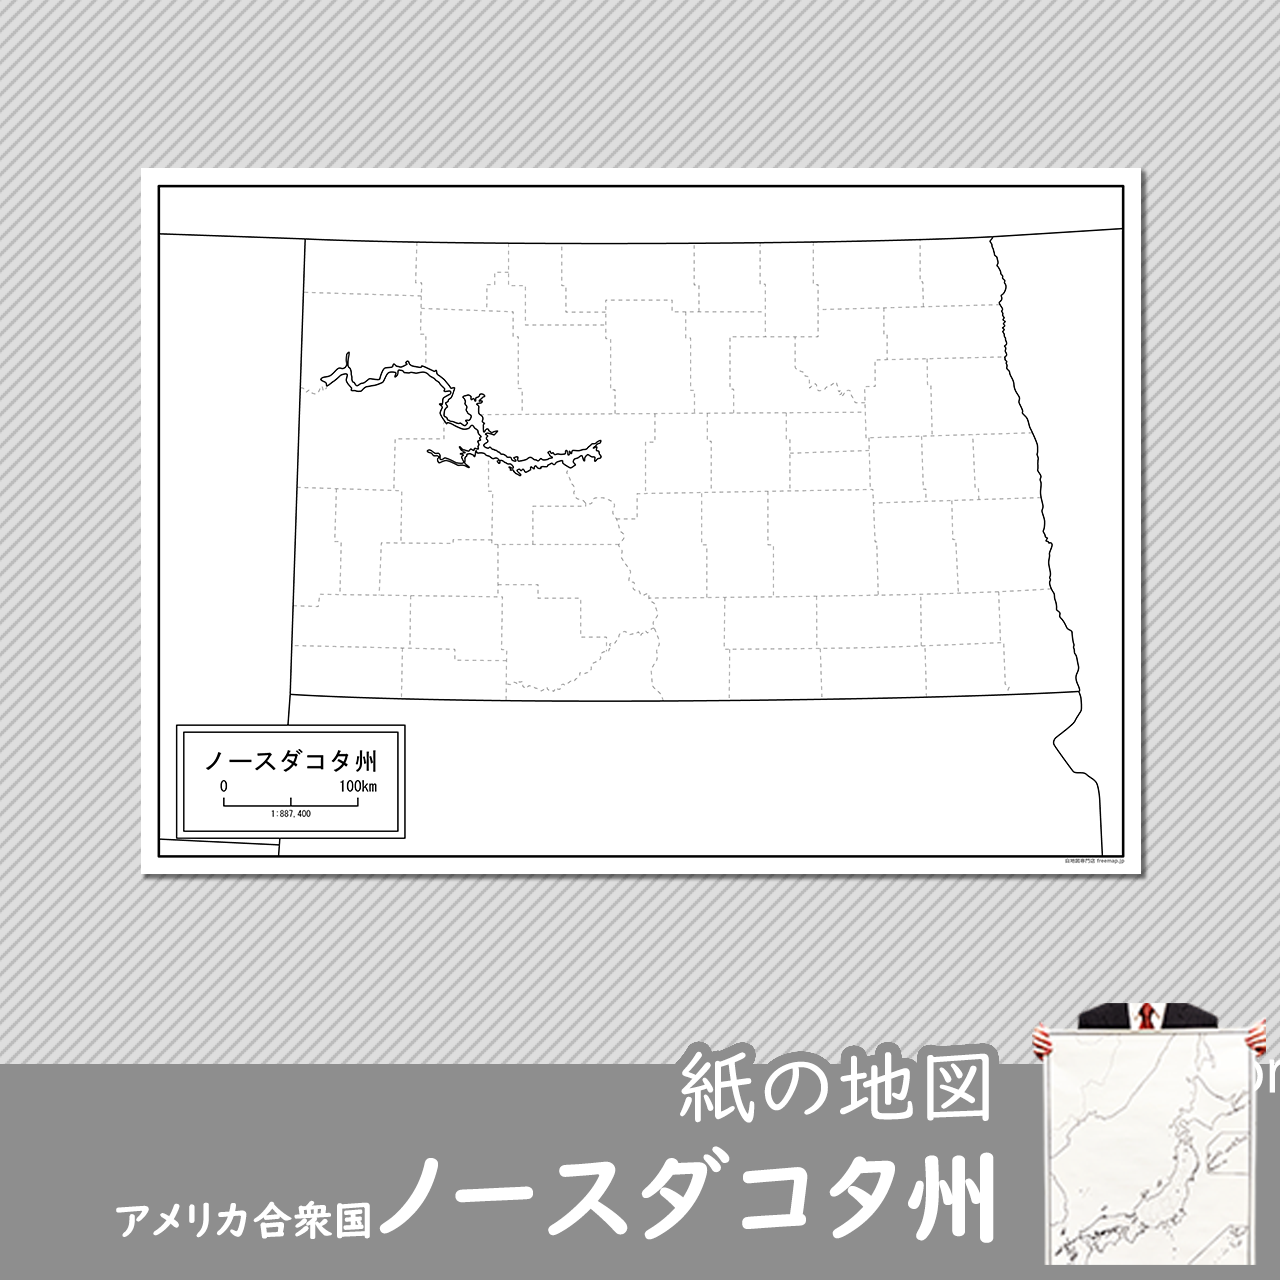 ノースダコタ州の紙の白地図のサムネイル